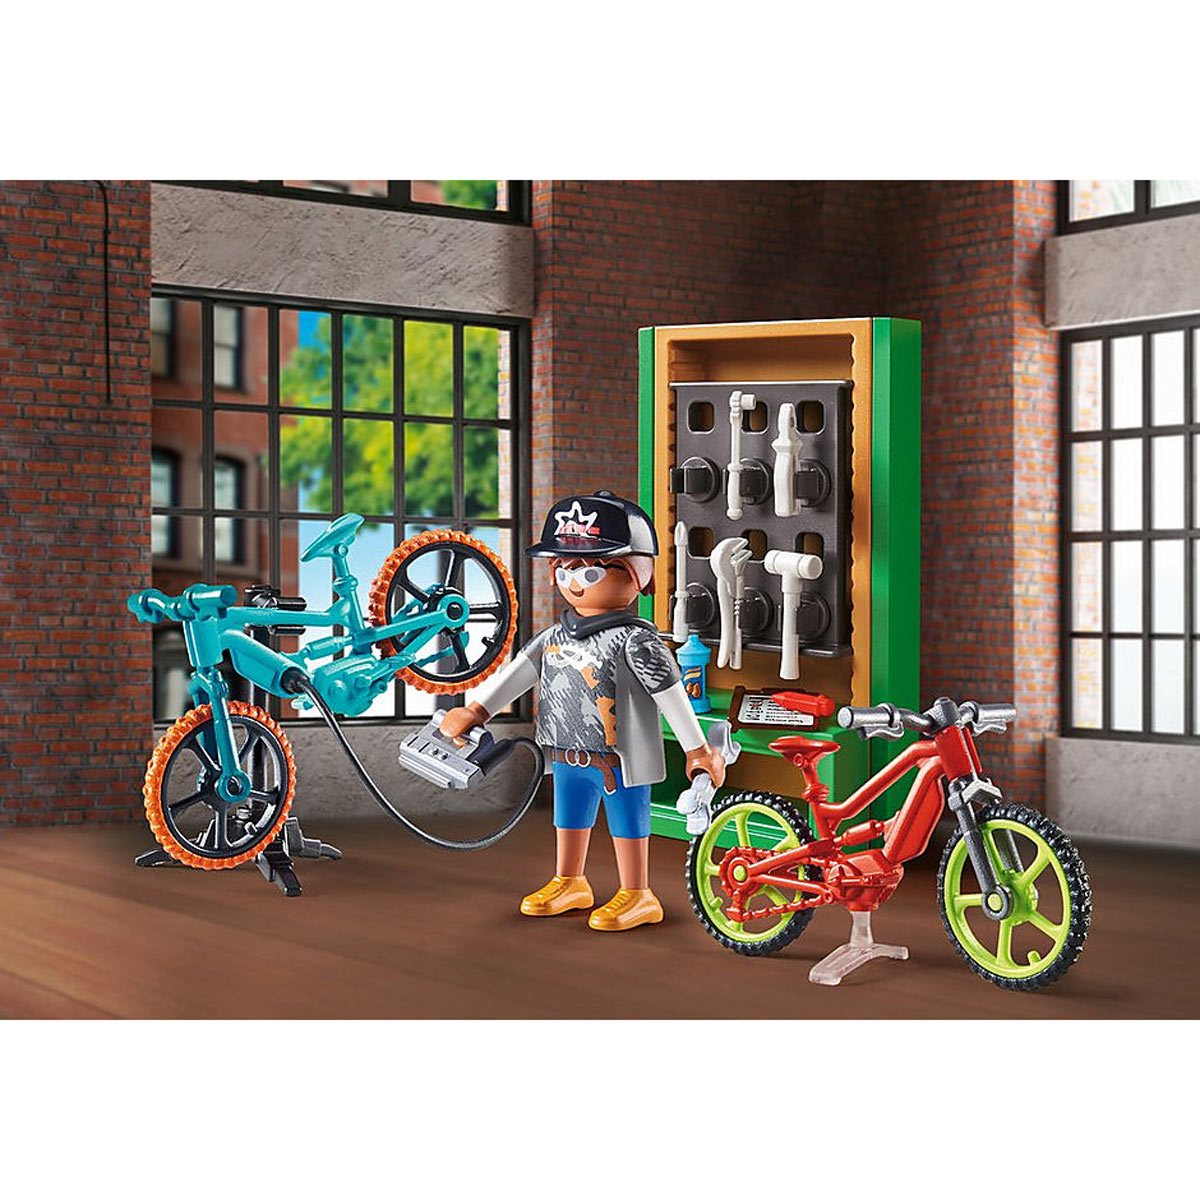 70674 - Playmobil City Life - Set cadeau Atelier de réparation